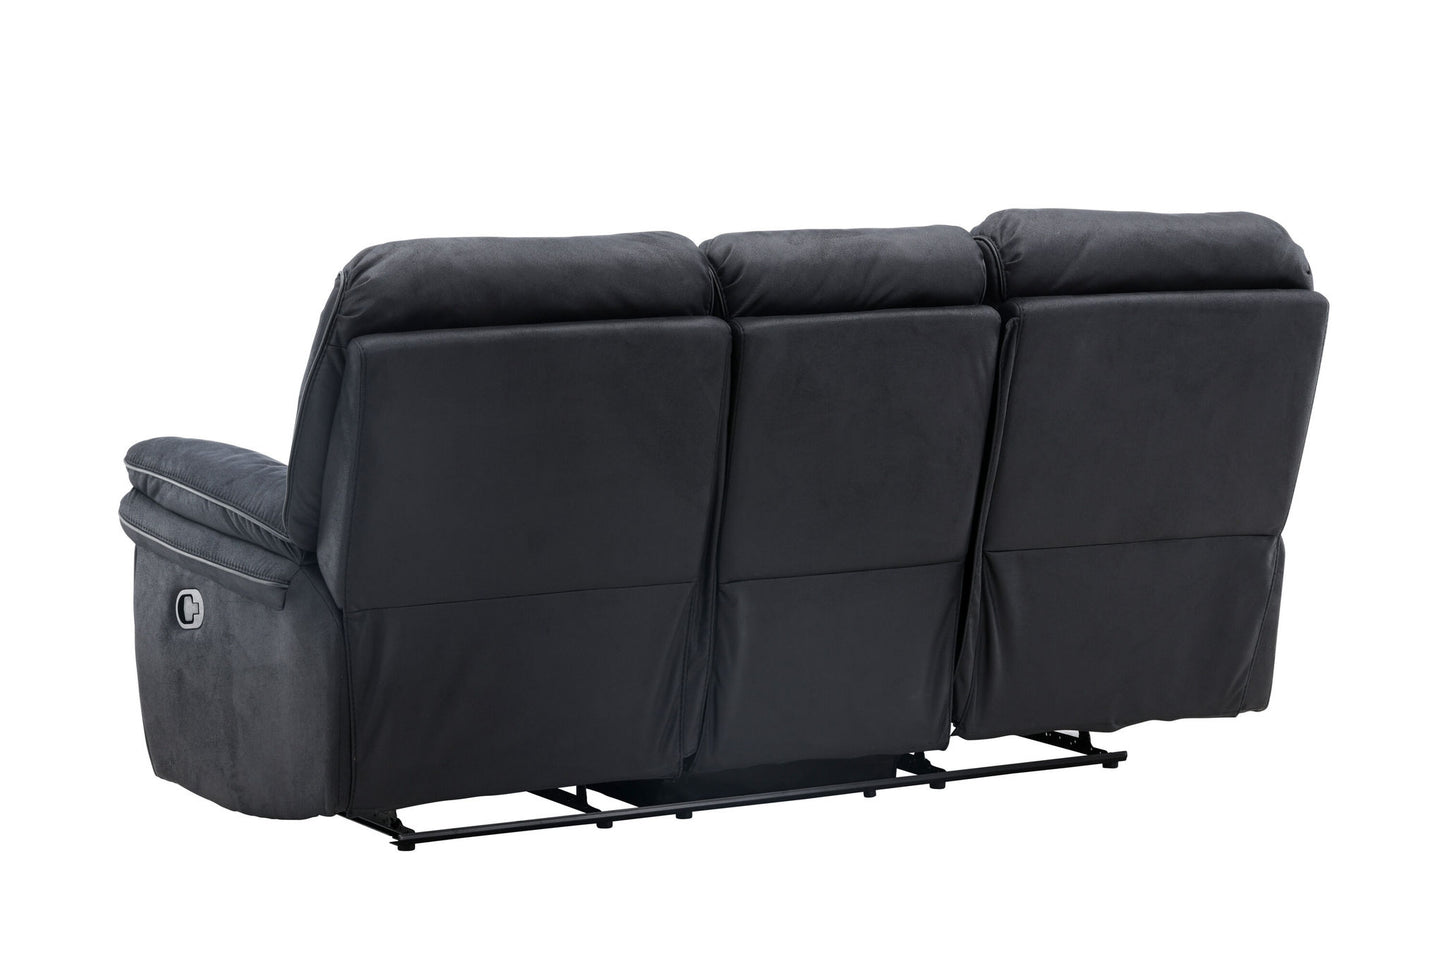 Saroga Recliner Sofa - Sort Microfiber